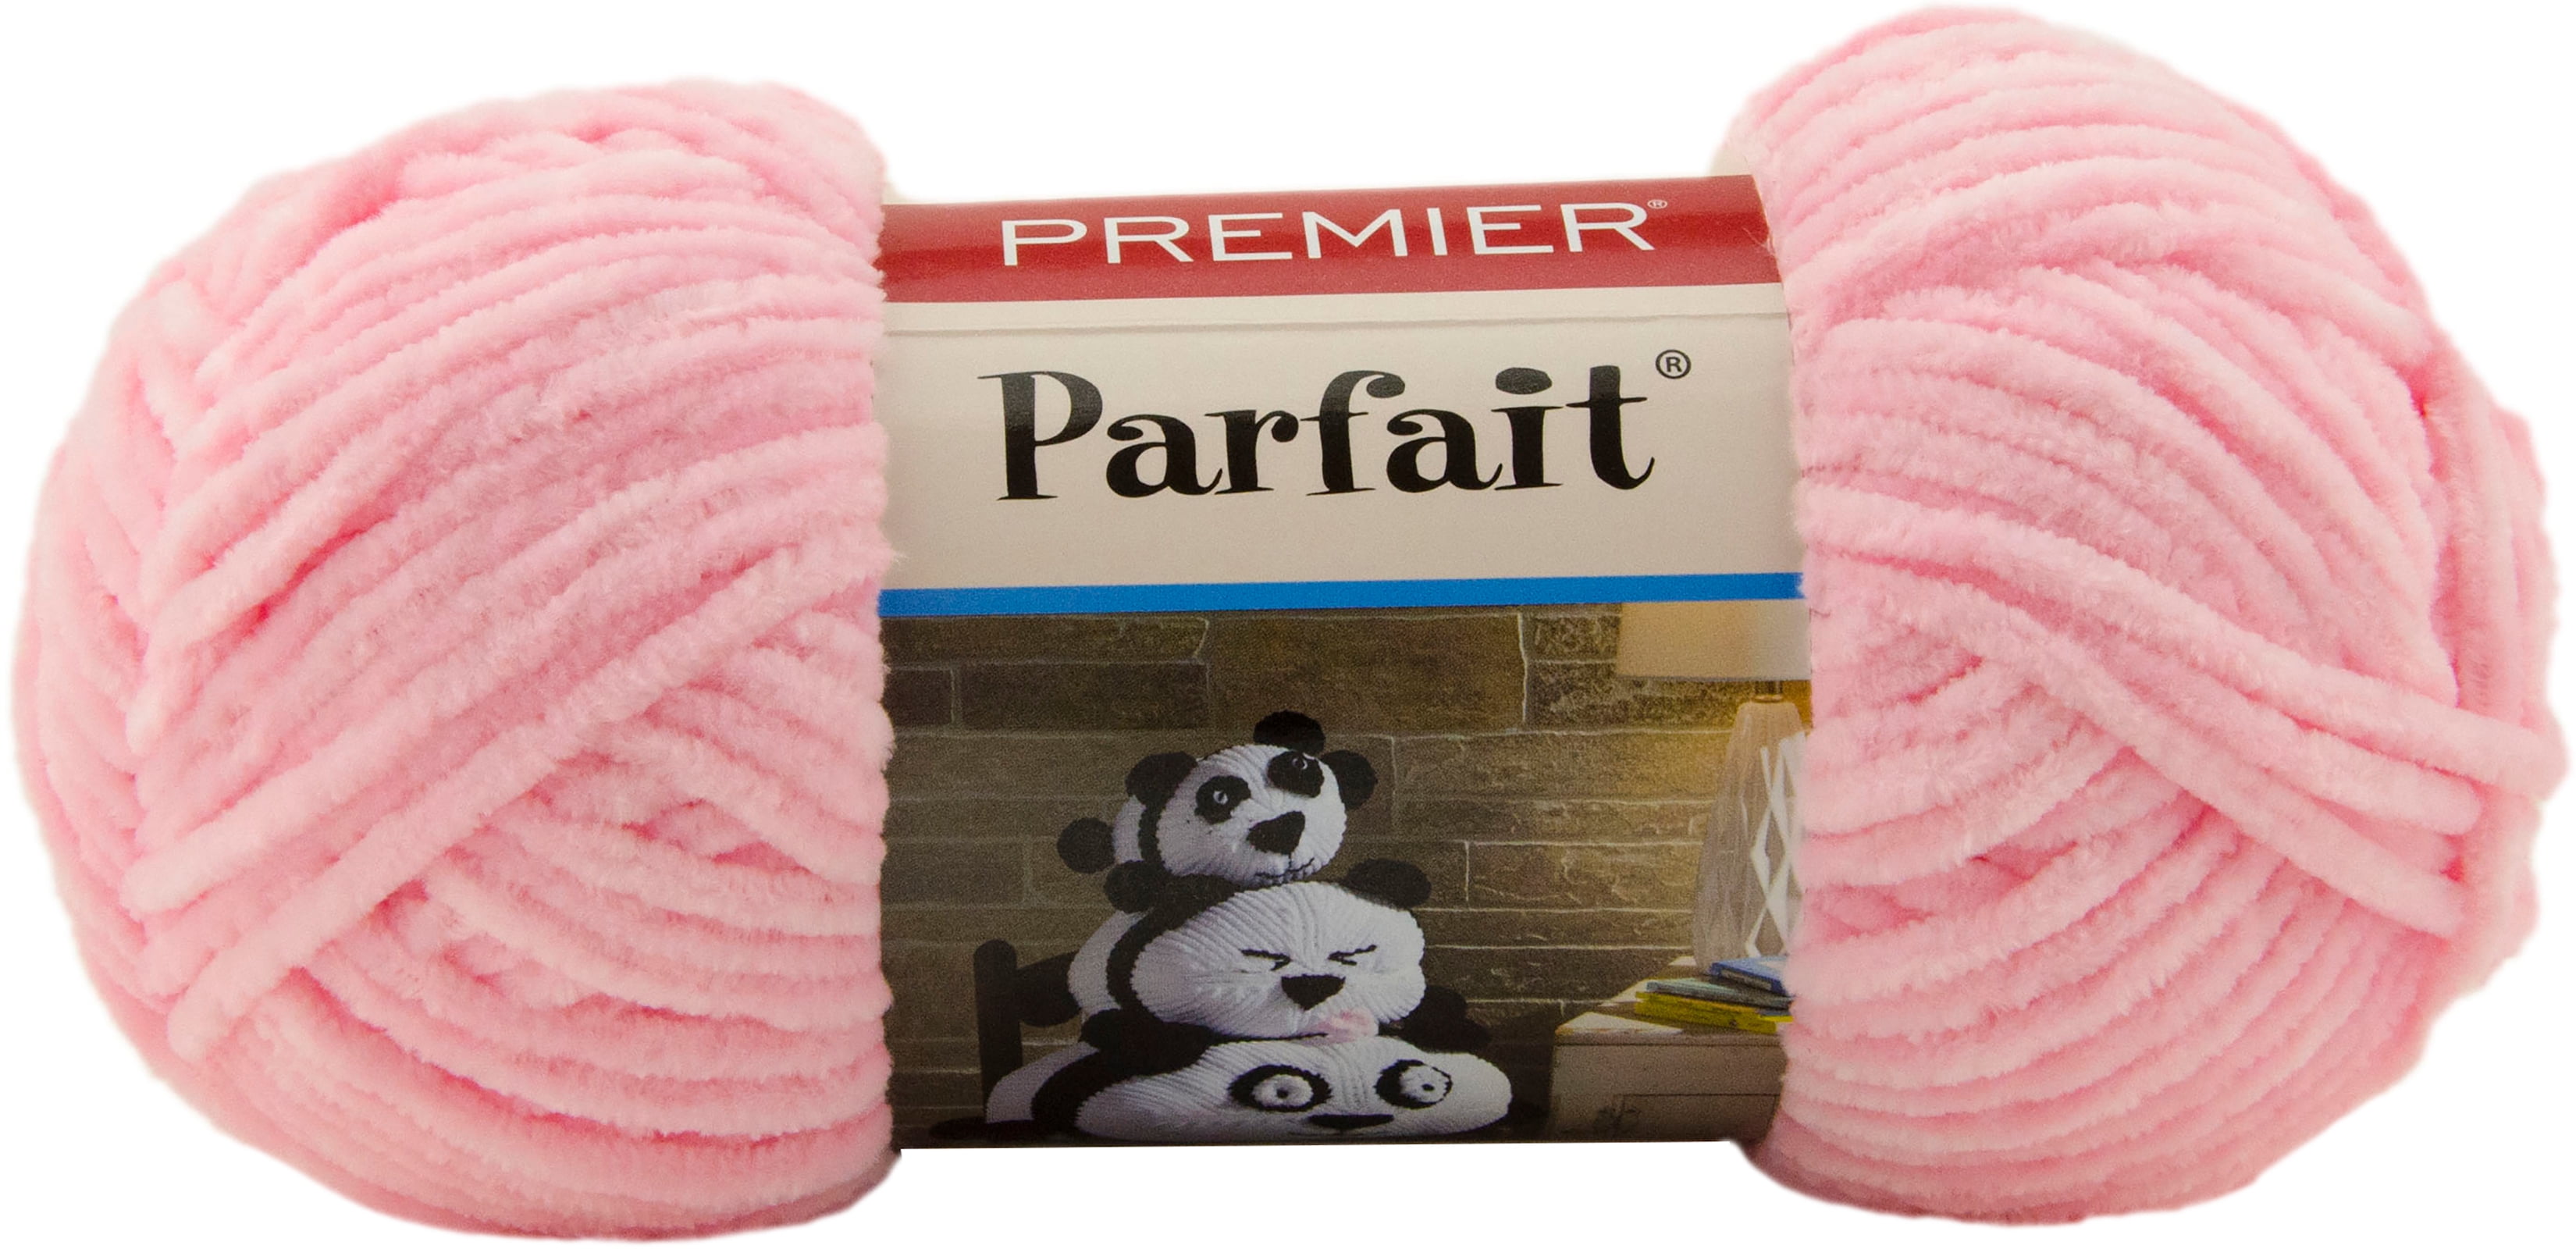 Premier Parfait Yarn BUTTER 30-12 192yds Premium Chenille Yarn